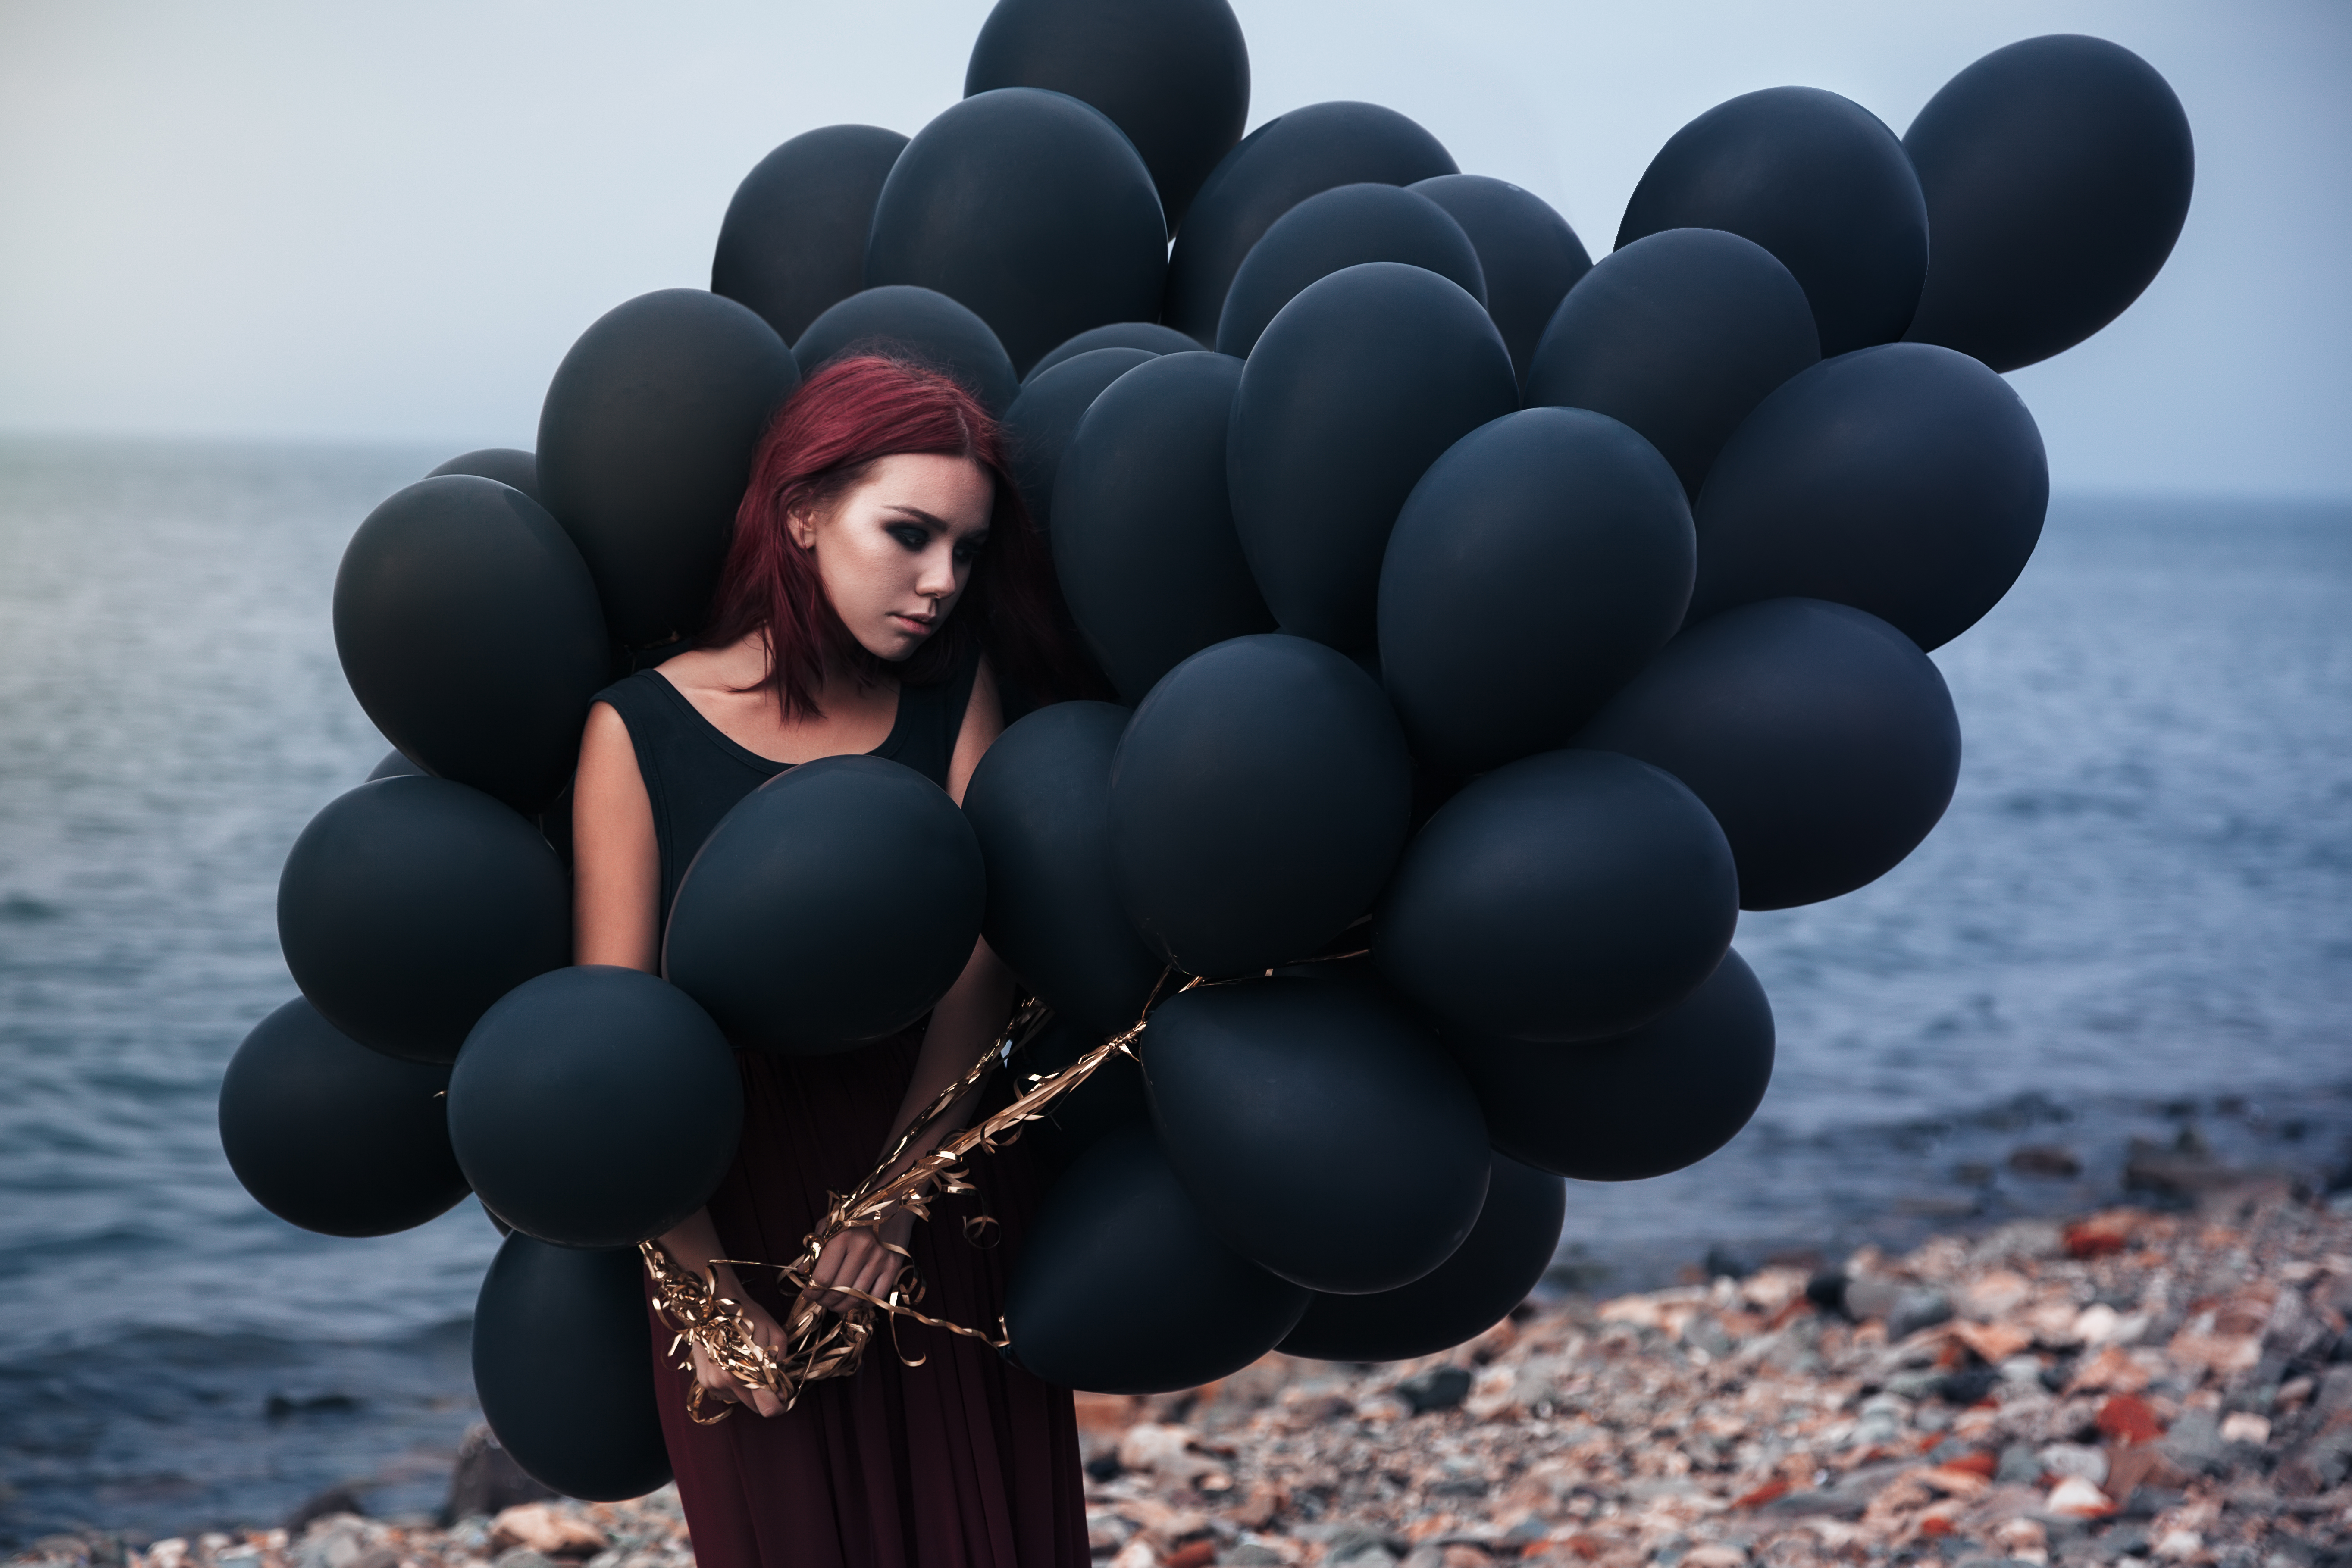 Картинка необычная женщина. Фотосессия с воздушными шарами. Девушка с шарами. Фотосессия с черными шарами. Черные воздушные шары.